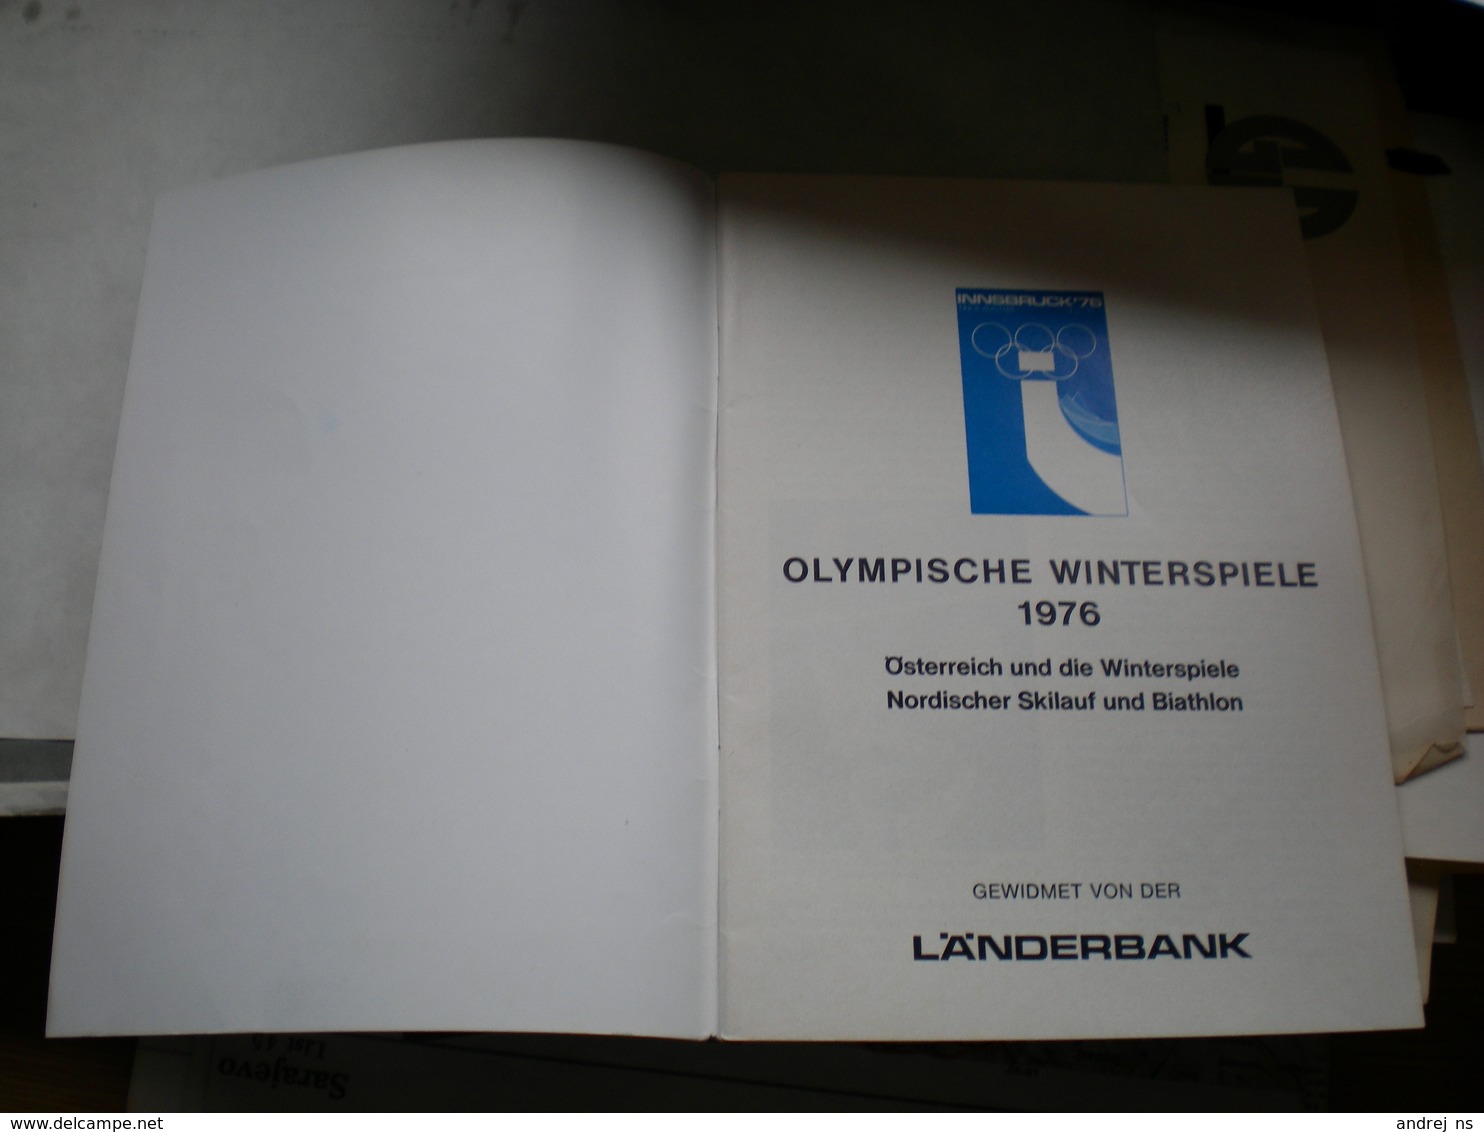 Olympische Winterspiele 1976 Osterreich Und Die Winterspiele Nordischer Skilauf Und Biathlon - Bücher